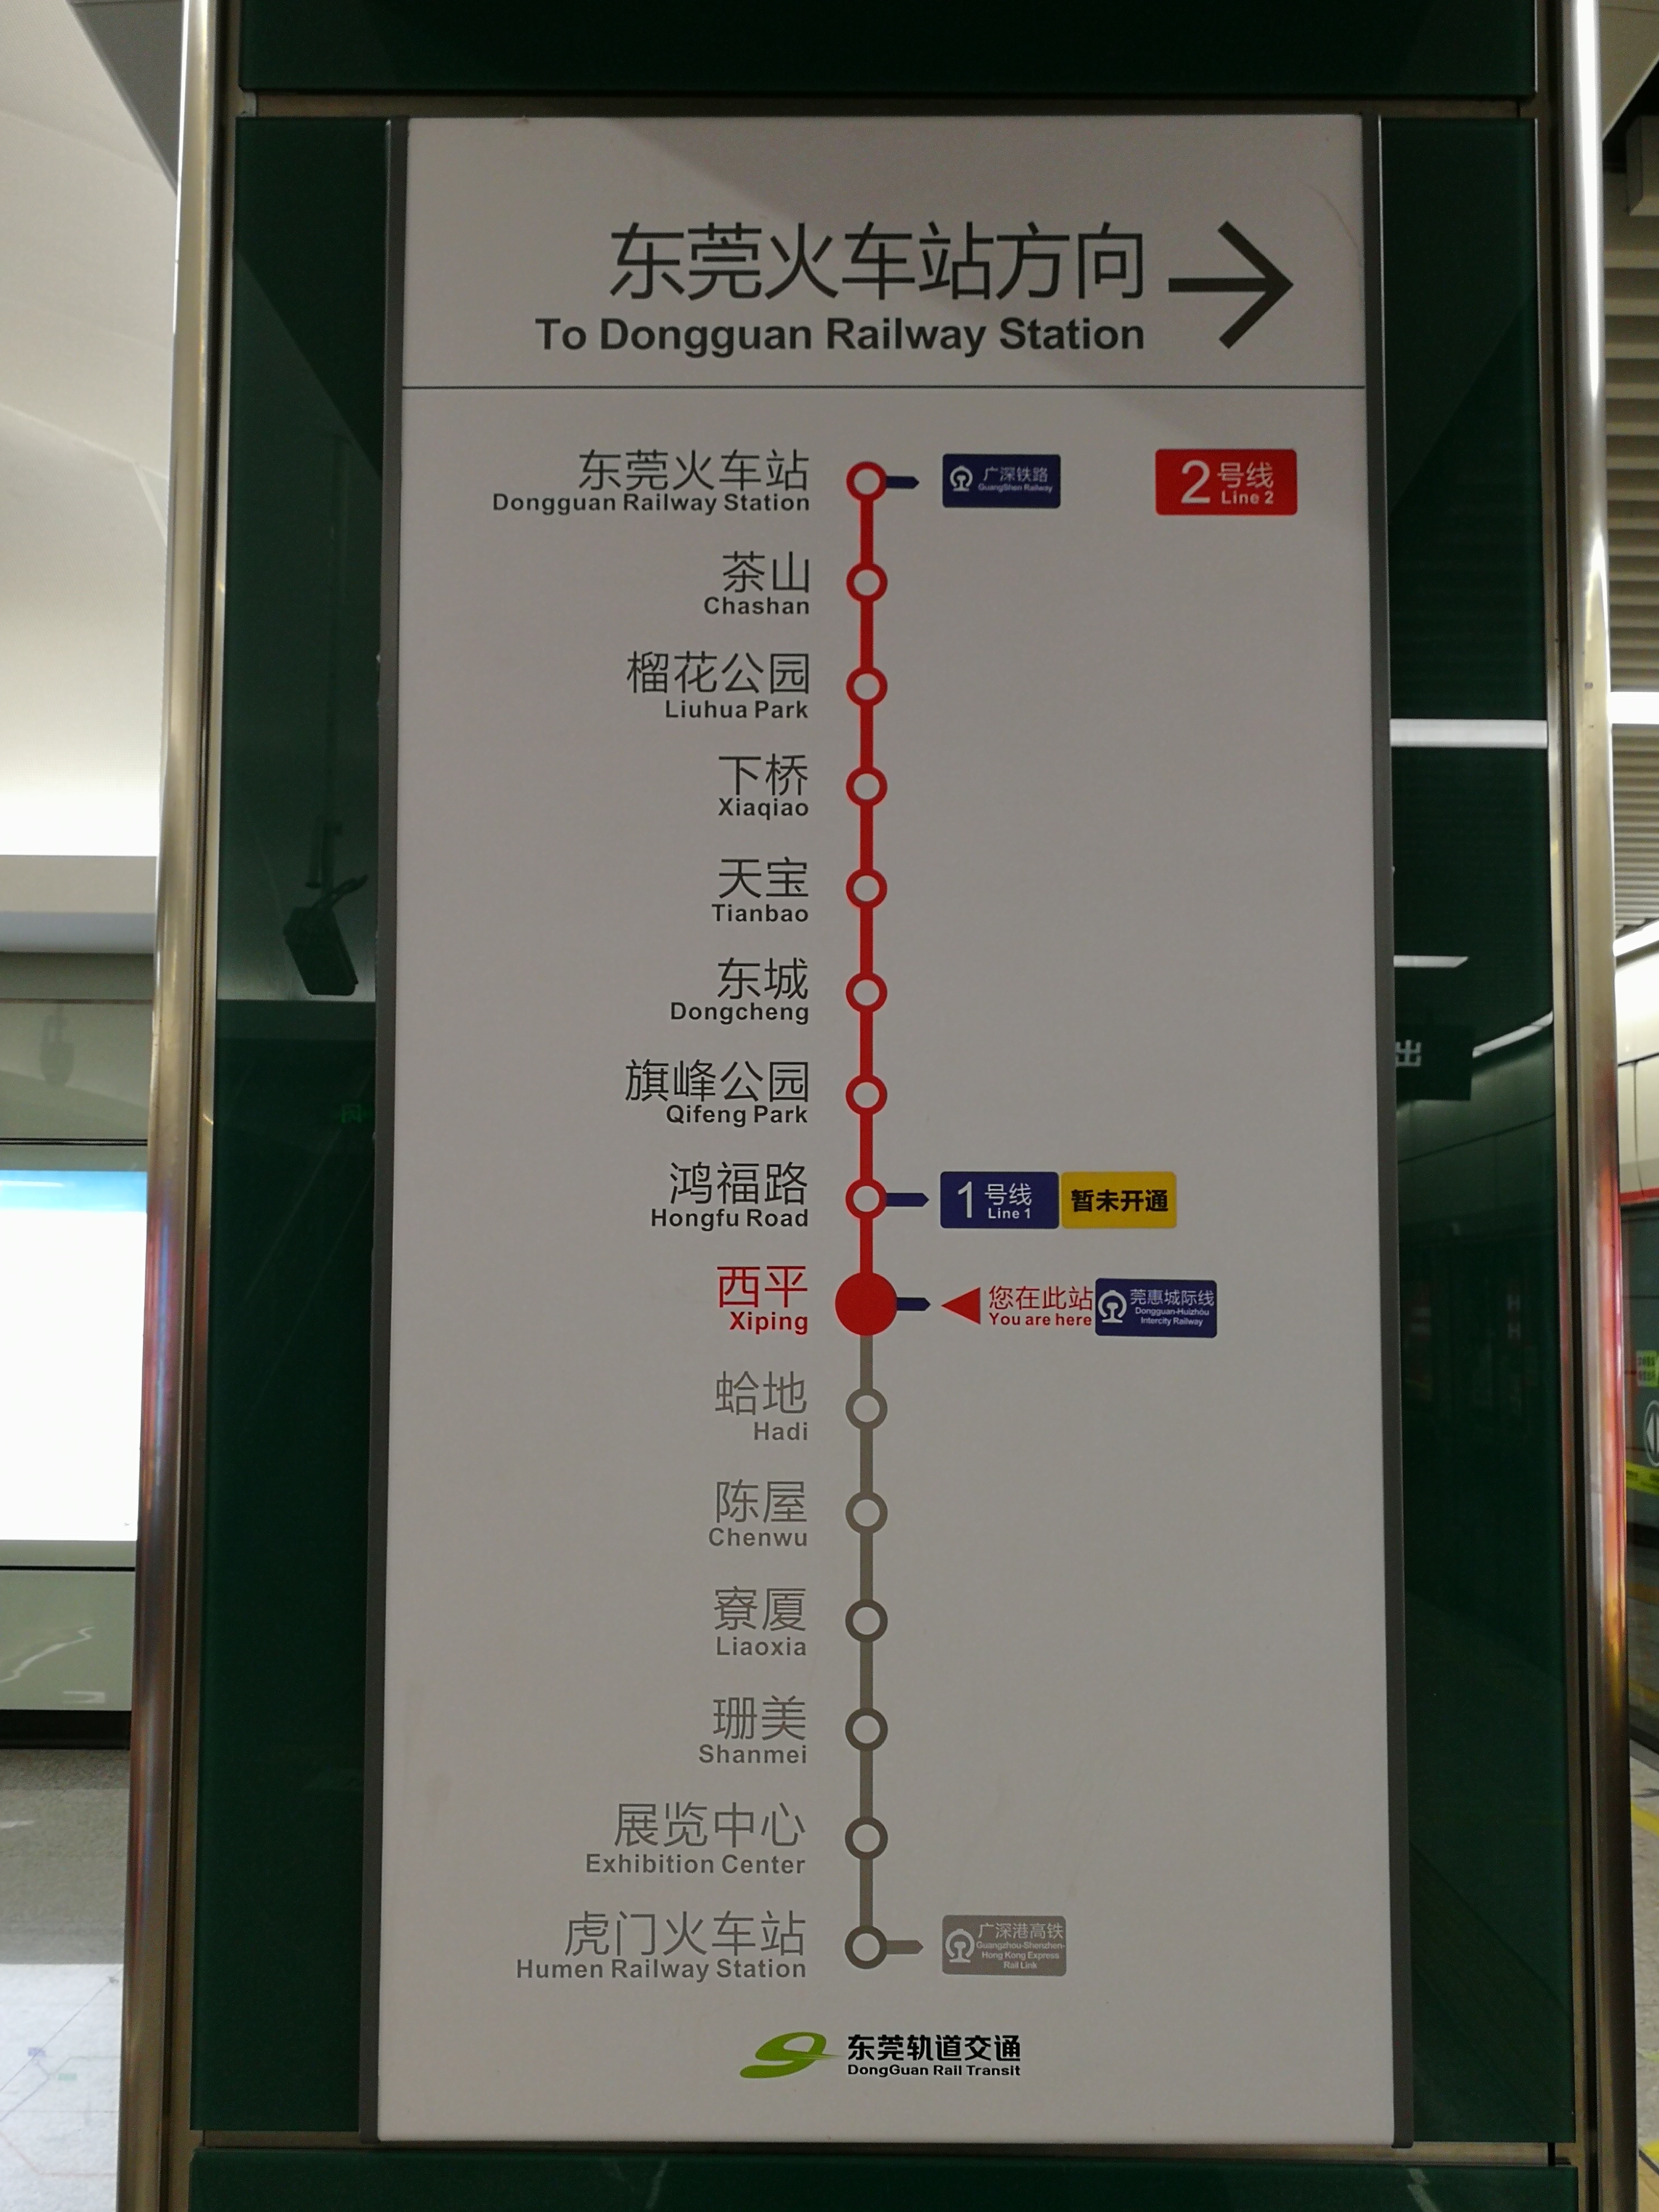 東莞軌道交通2號線車站列表